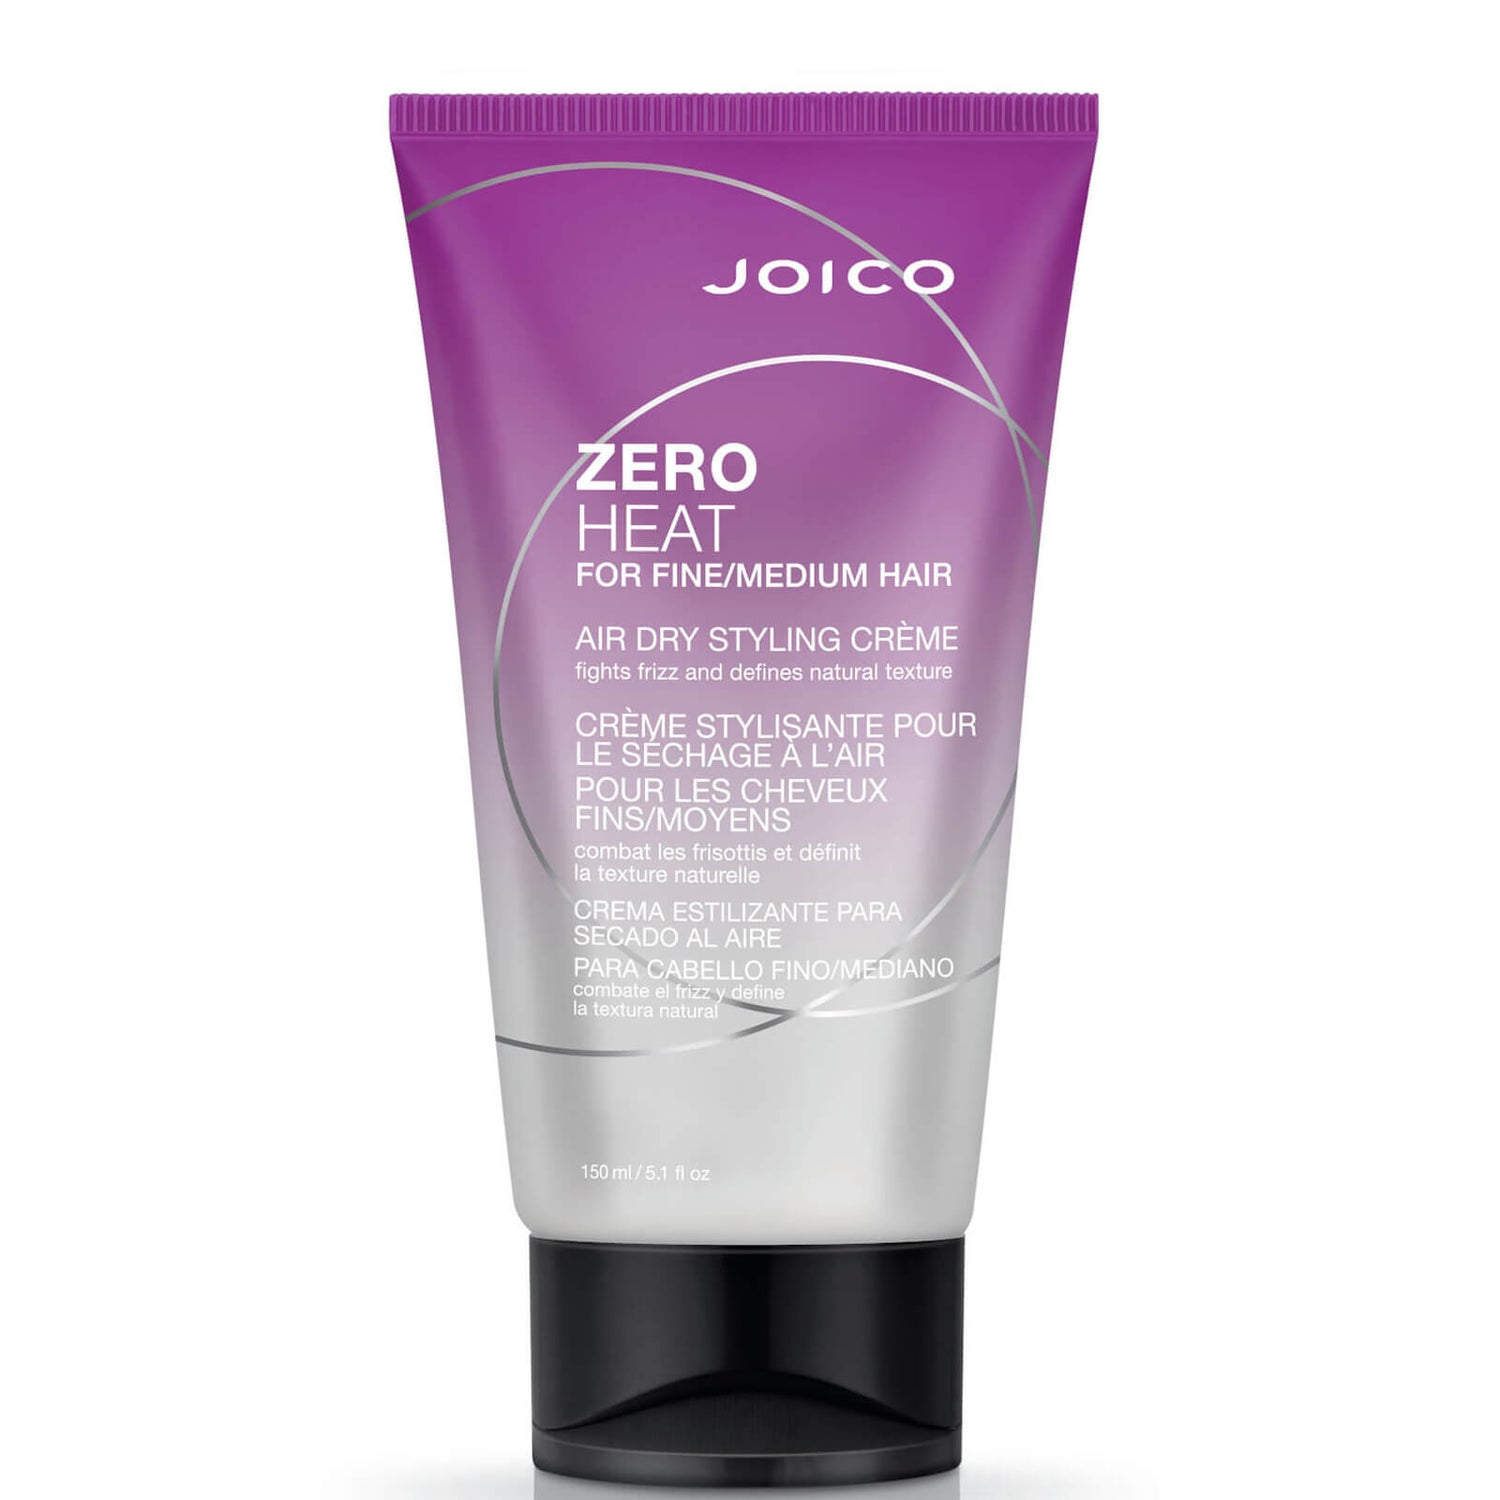 Joico 零热感轻盈风干造型乳 150ml | 适合细软至中等发质